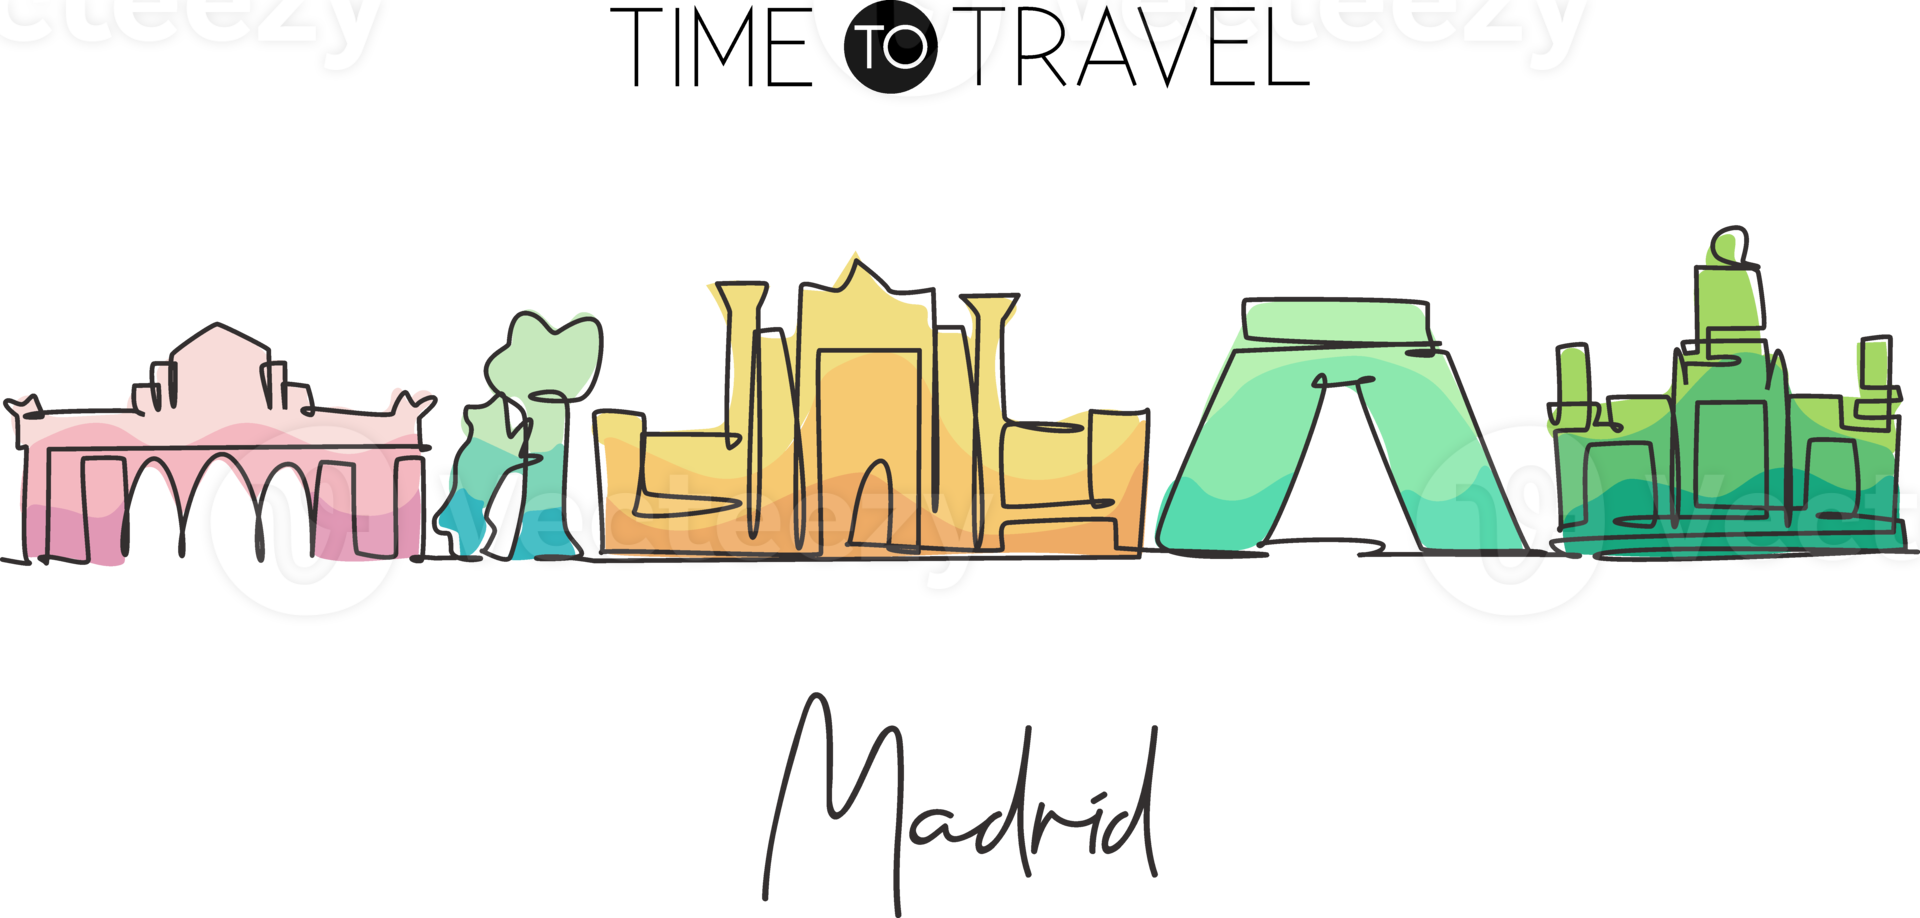 eine einzige Strichzeichnung der Skyline der Stadt Madrid, Spanien. historische wolkenkratzerlandschaft in der weltpostkarte. bestes urlaubsziel wanddekor poster. ununterbrochene Linie zeichnen Design-Vektor-Illustration png